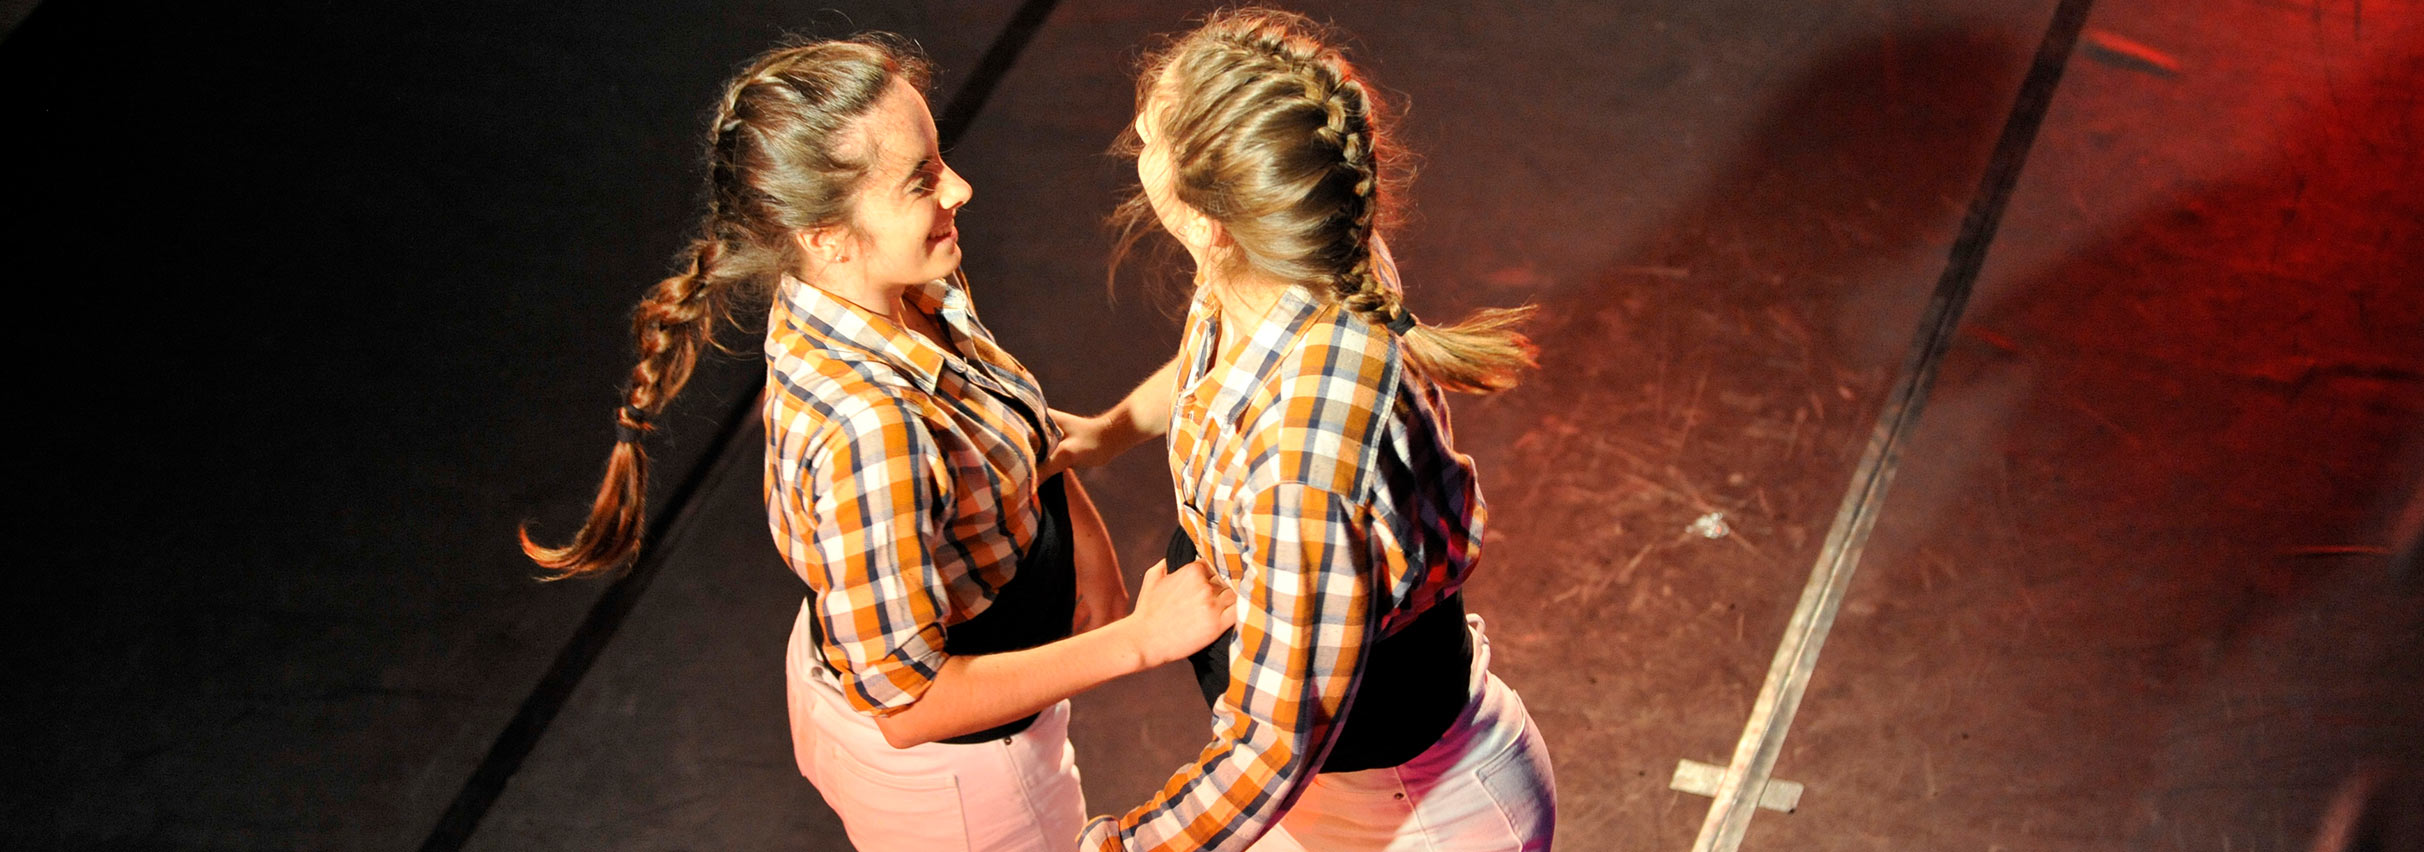 La cultura popular clou la 27a edició del Dansàneu, que avui programa l'últim espectacle - DANSÀNEU - FESTIVAL DE CULTURES DEL PIRINEU